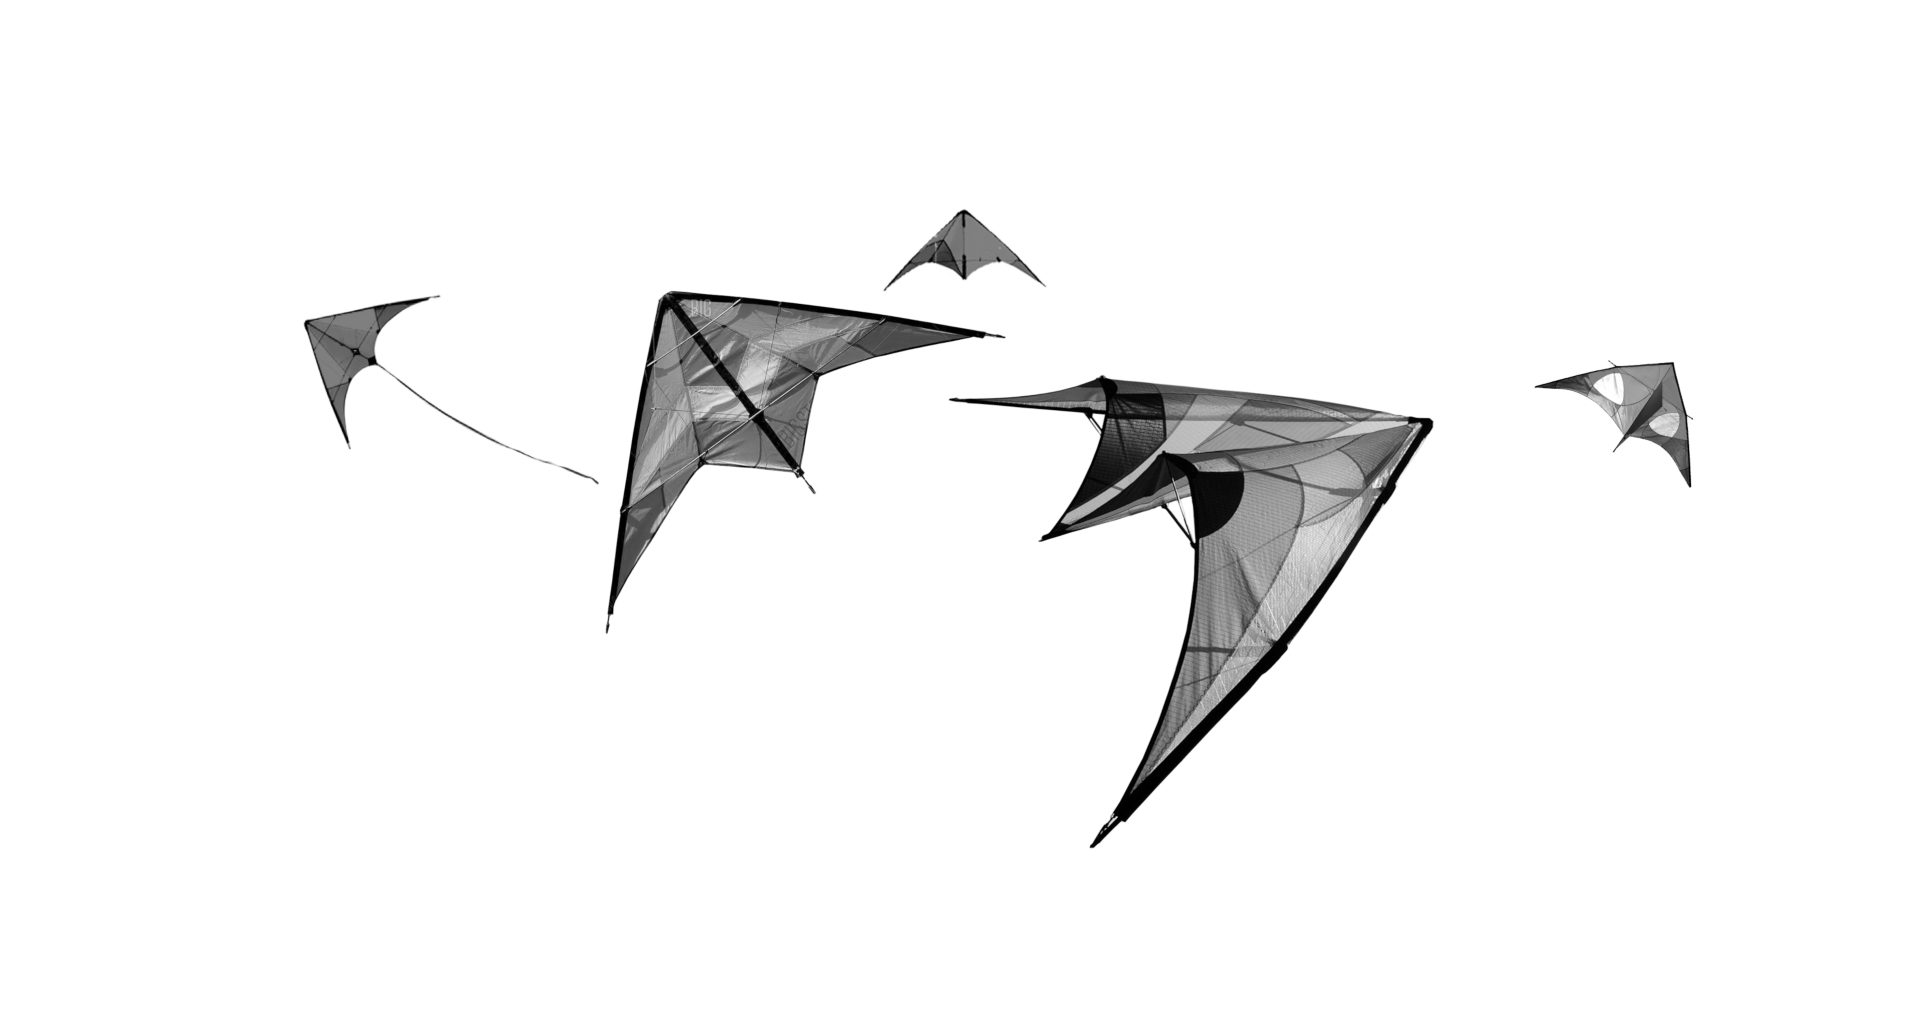 photo of kites